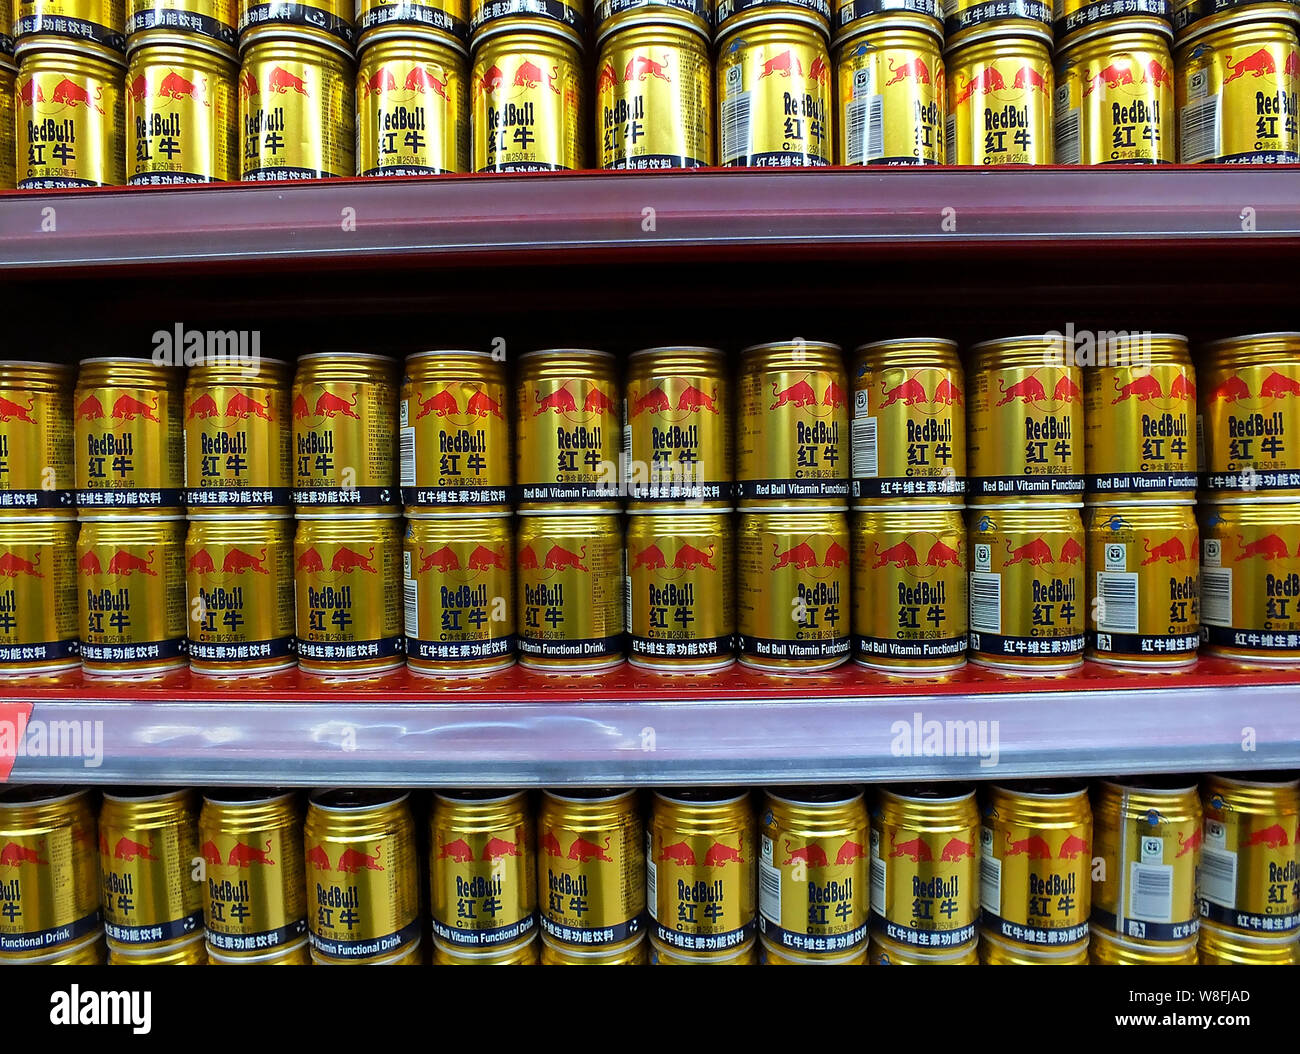 ------ Dosen Red Bull Energy Drink auf einem Regal im Supermarkt sind dargestellt in Yichang, Provinz Hubei, China 17. April 2014. Die c Stockfoto